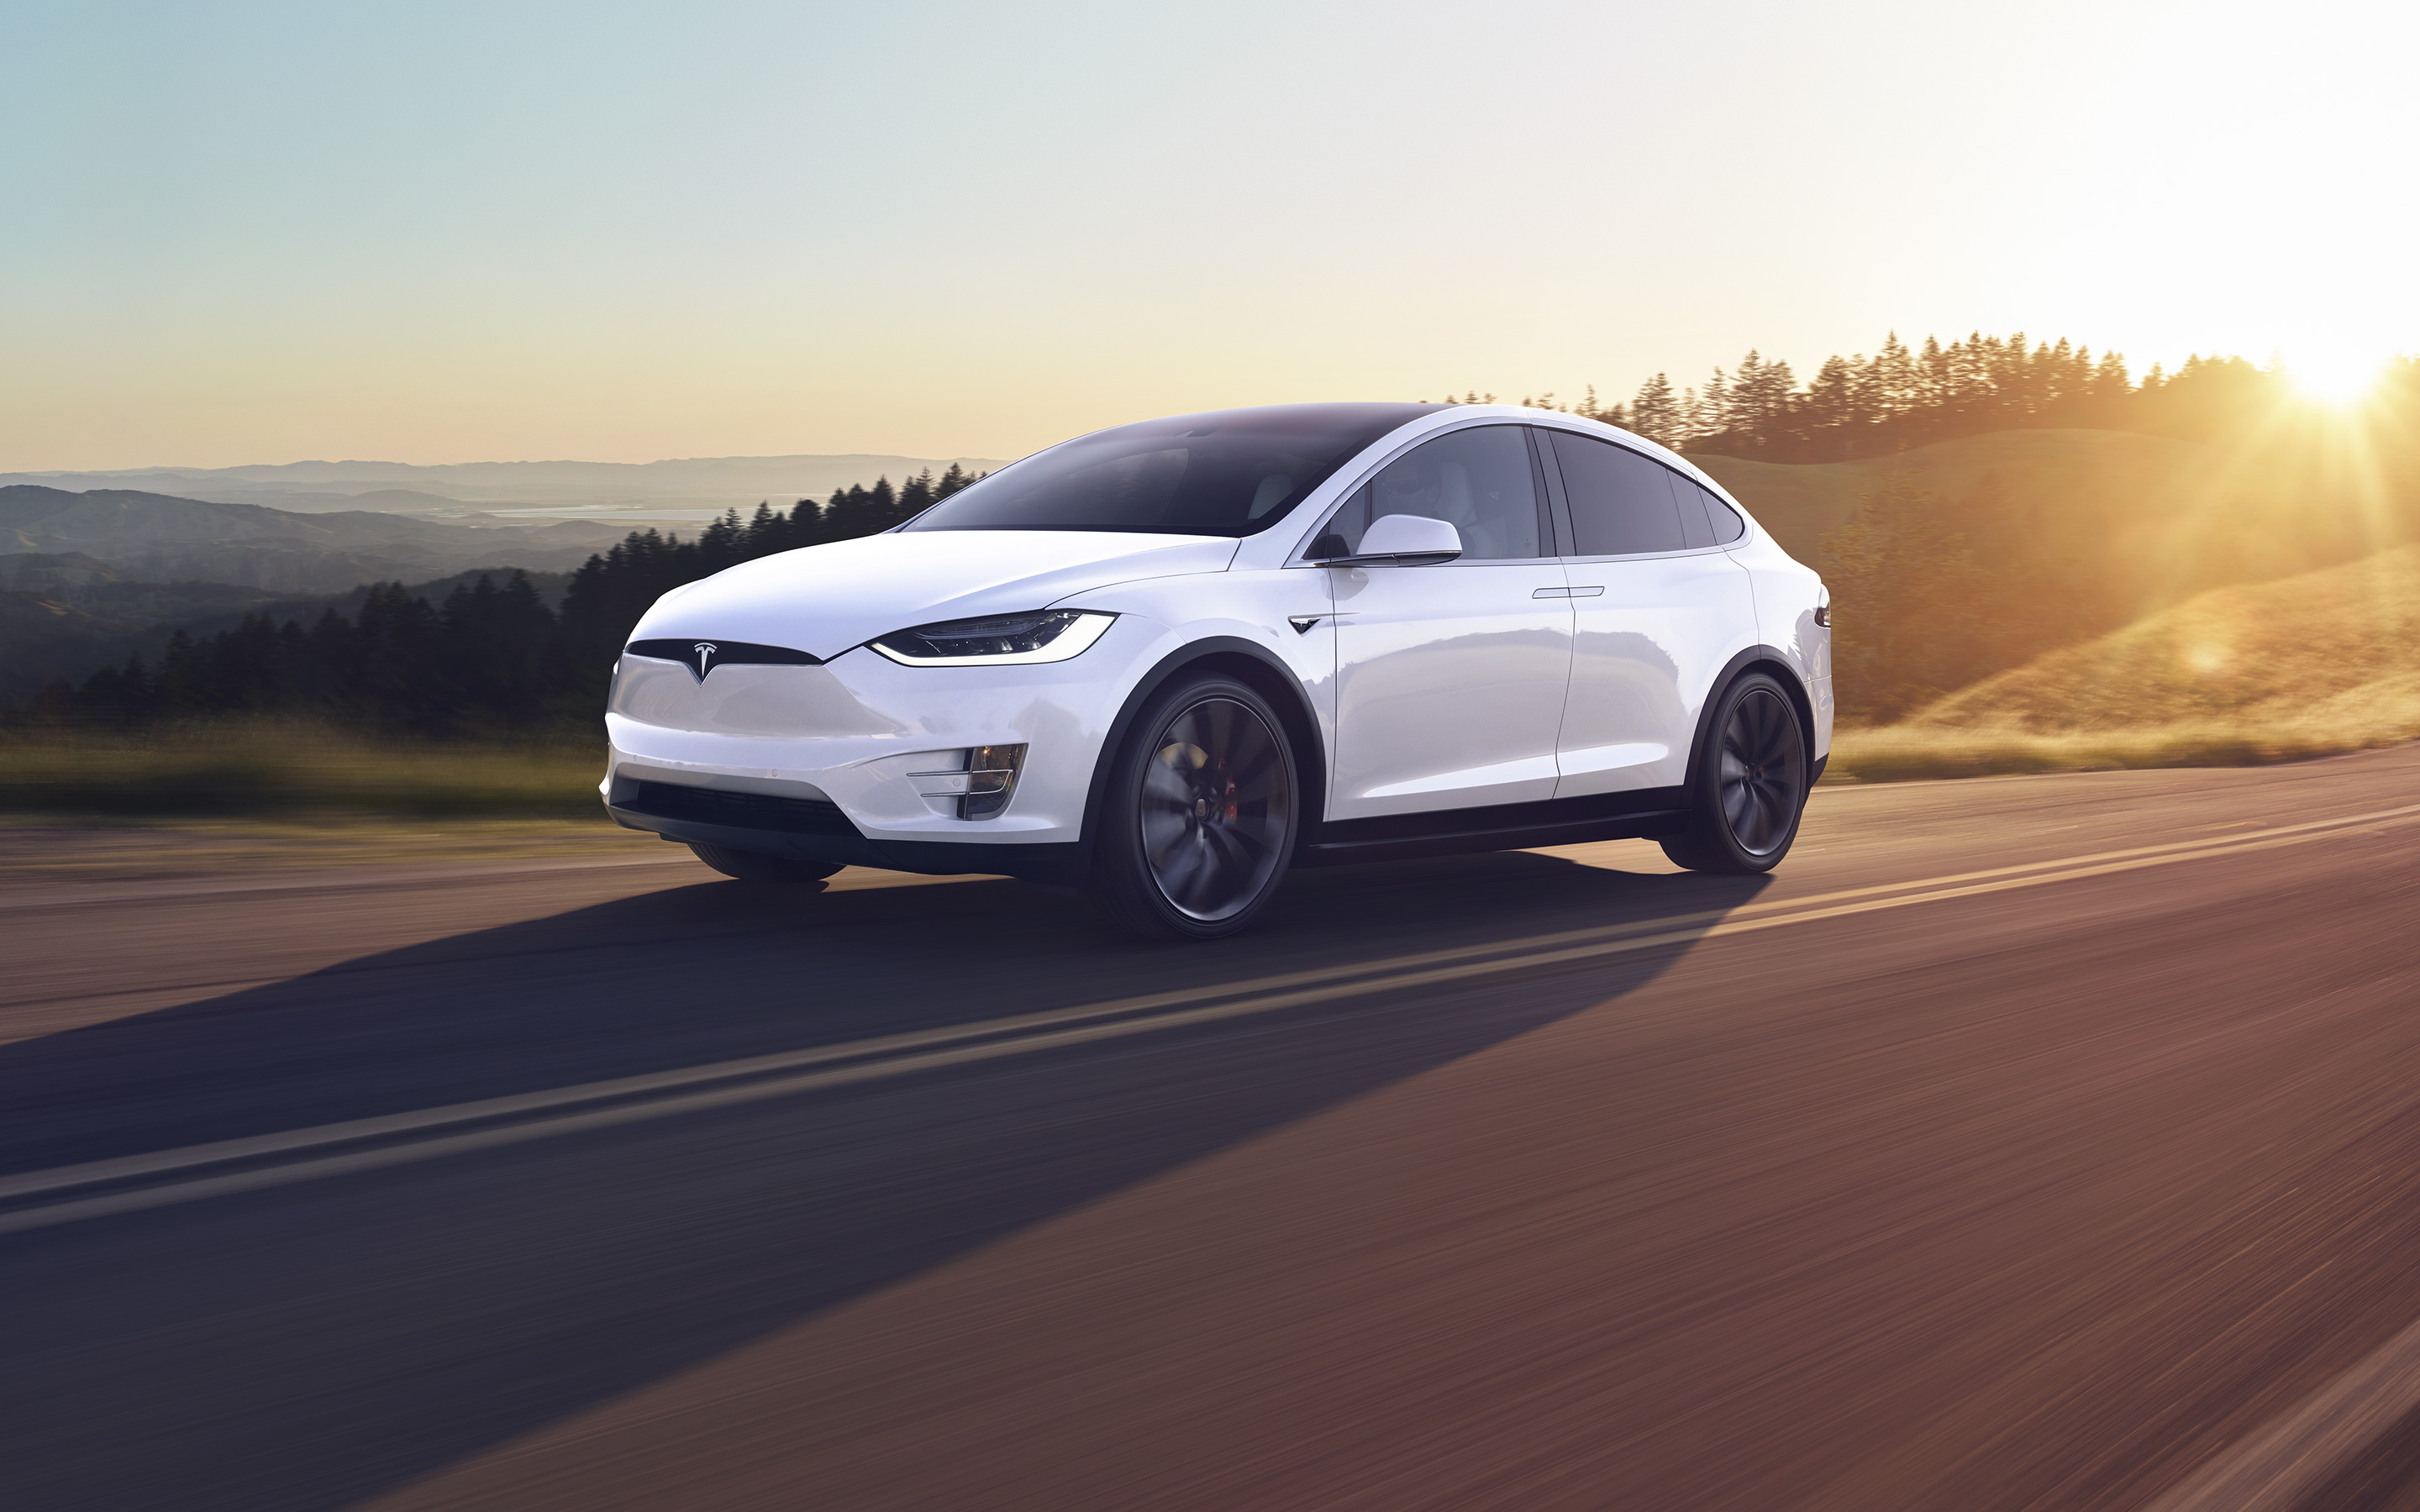 Le Tesla Model X s’affiche comme l’un des SUV les plus sûrs du marché